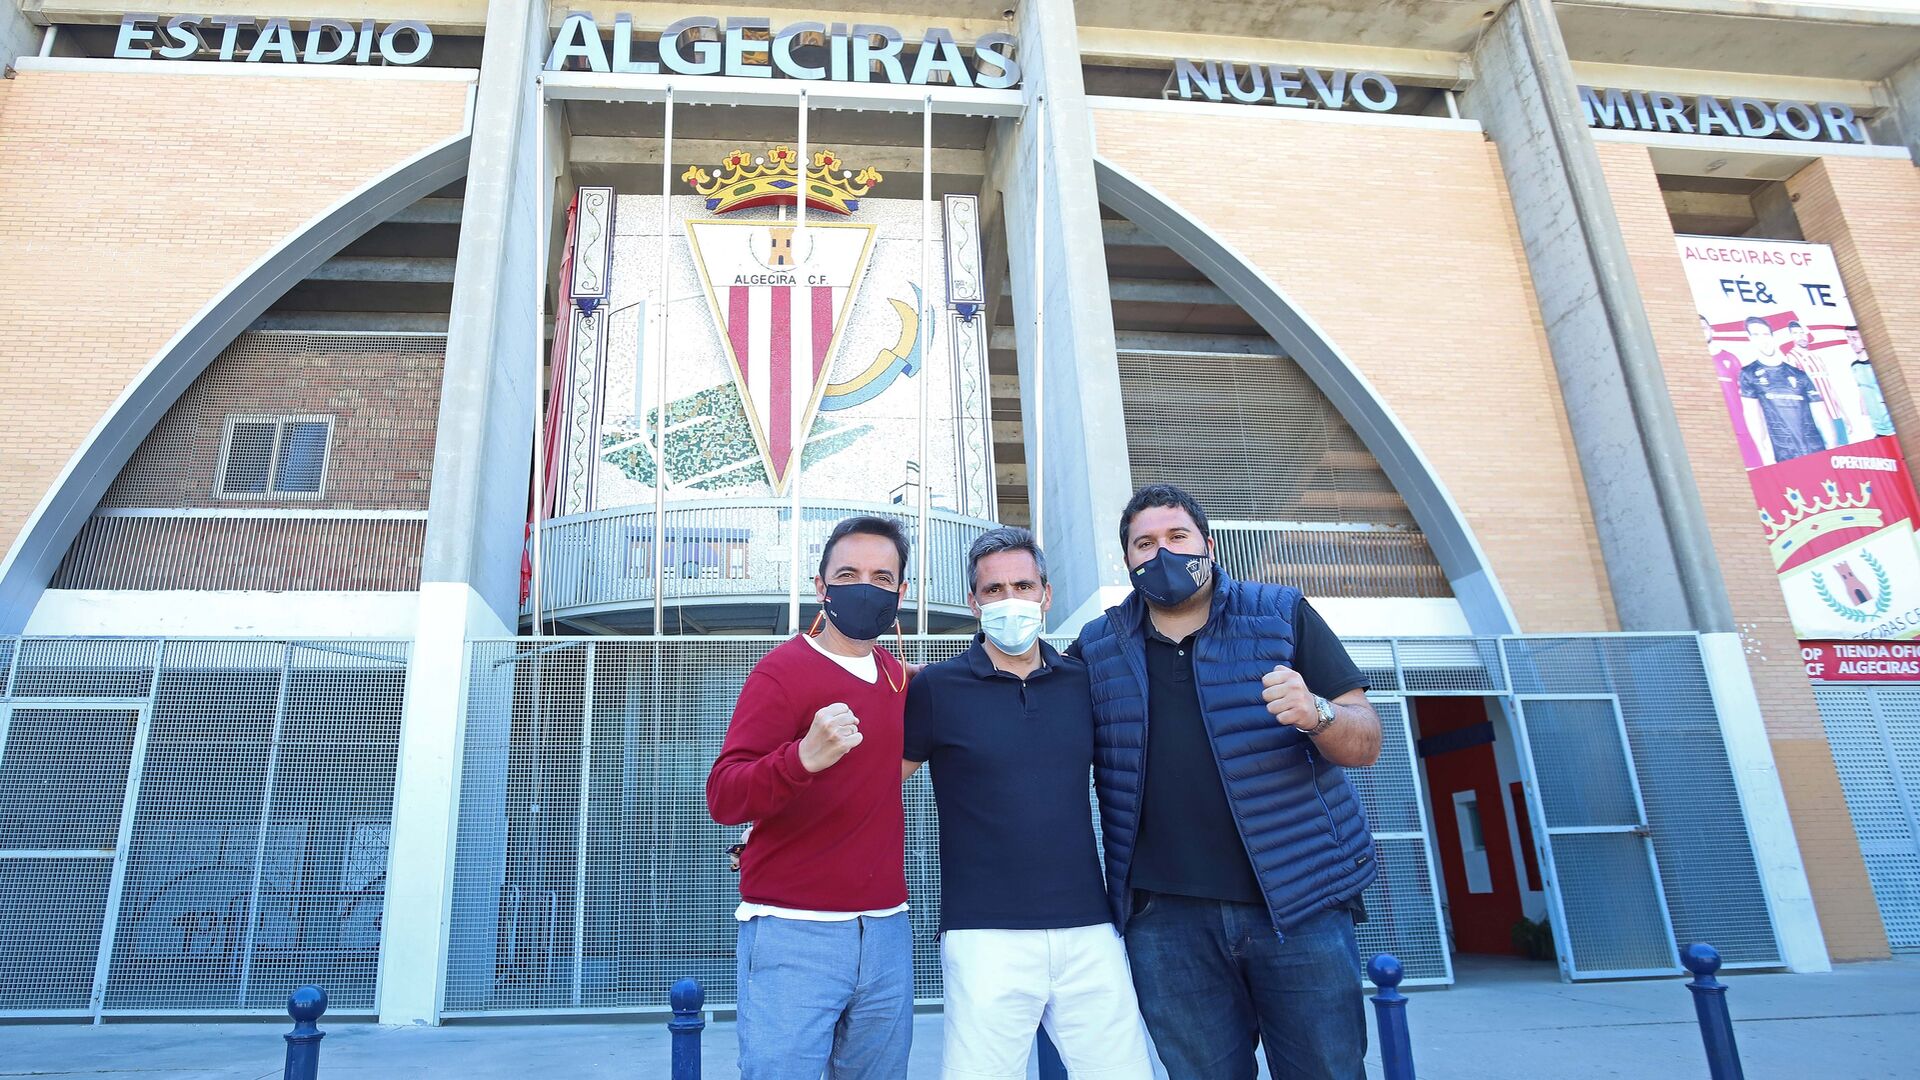 Fotos de la salida del Algeciras al playoff de ascenso de Extremadura